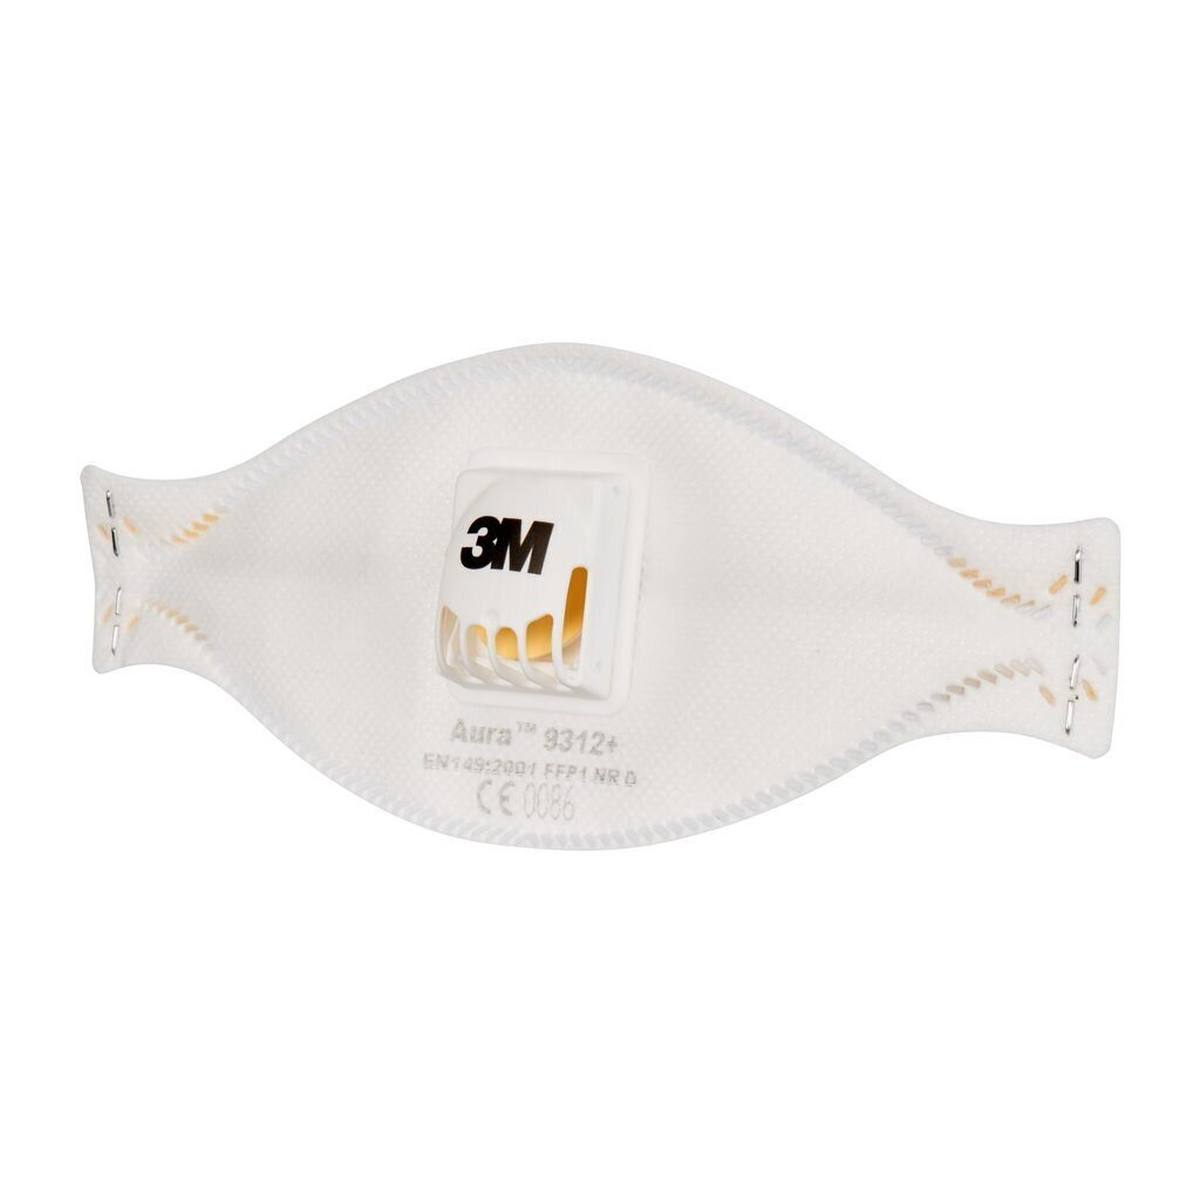 3M 9312 Aura Masque de protection respiratoire FFP1 avec valve d'expiration Cool-Flow, jusqu'à 4 fois la valeur limite (emballage individuel hygiénique)